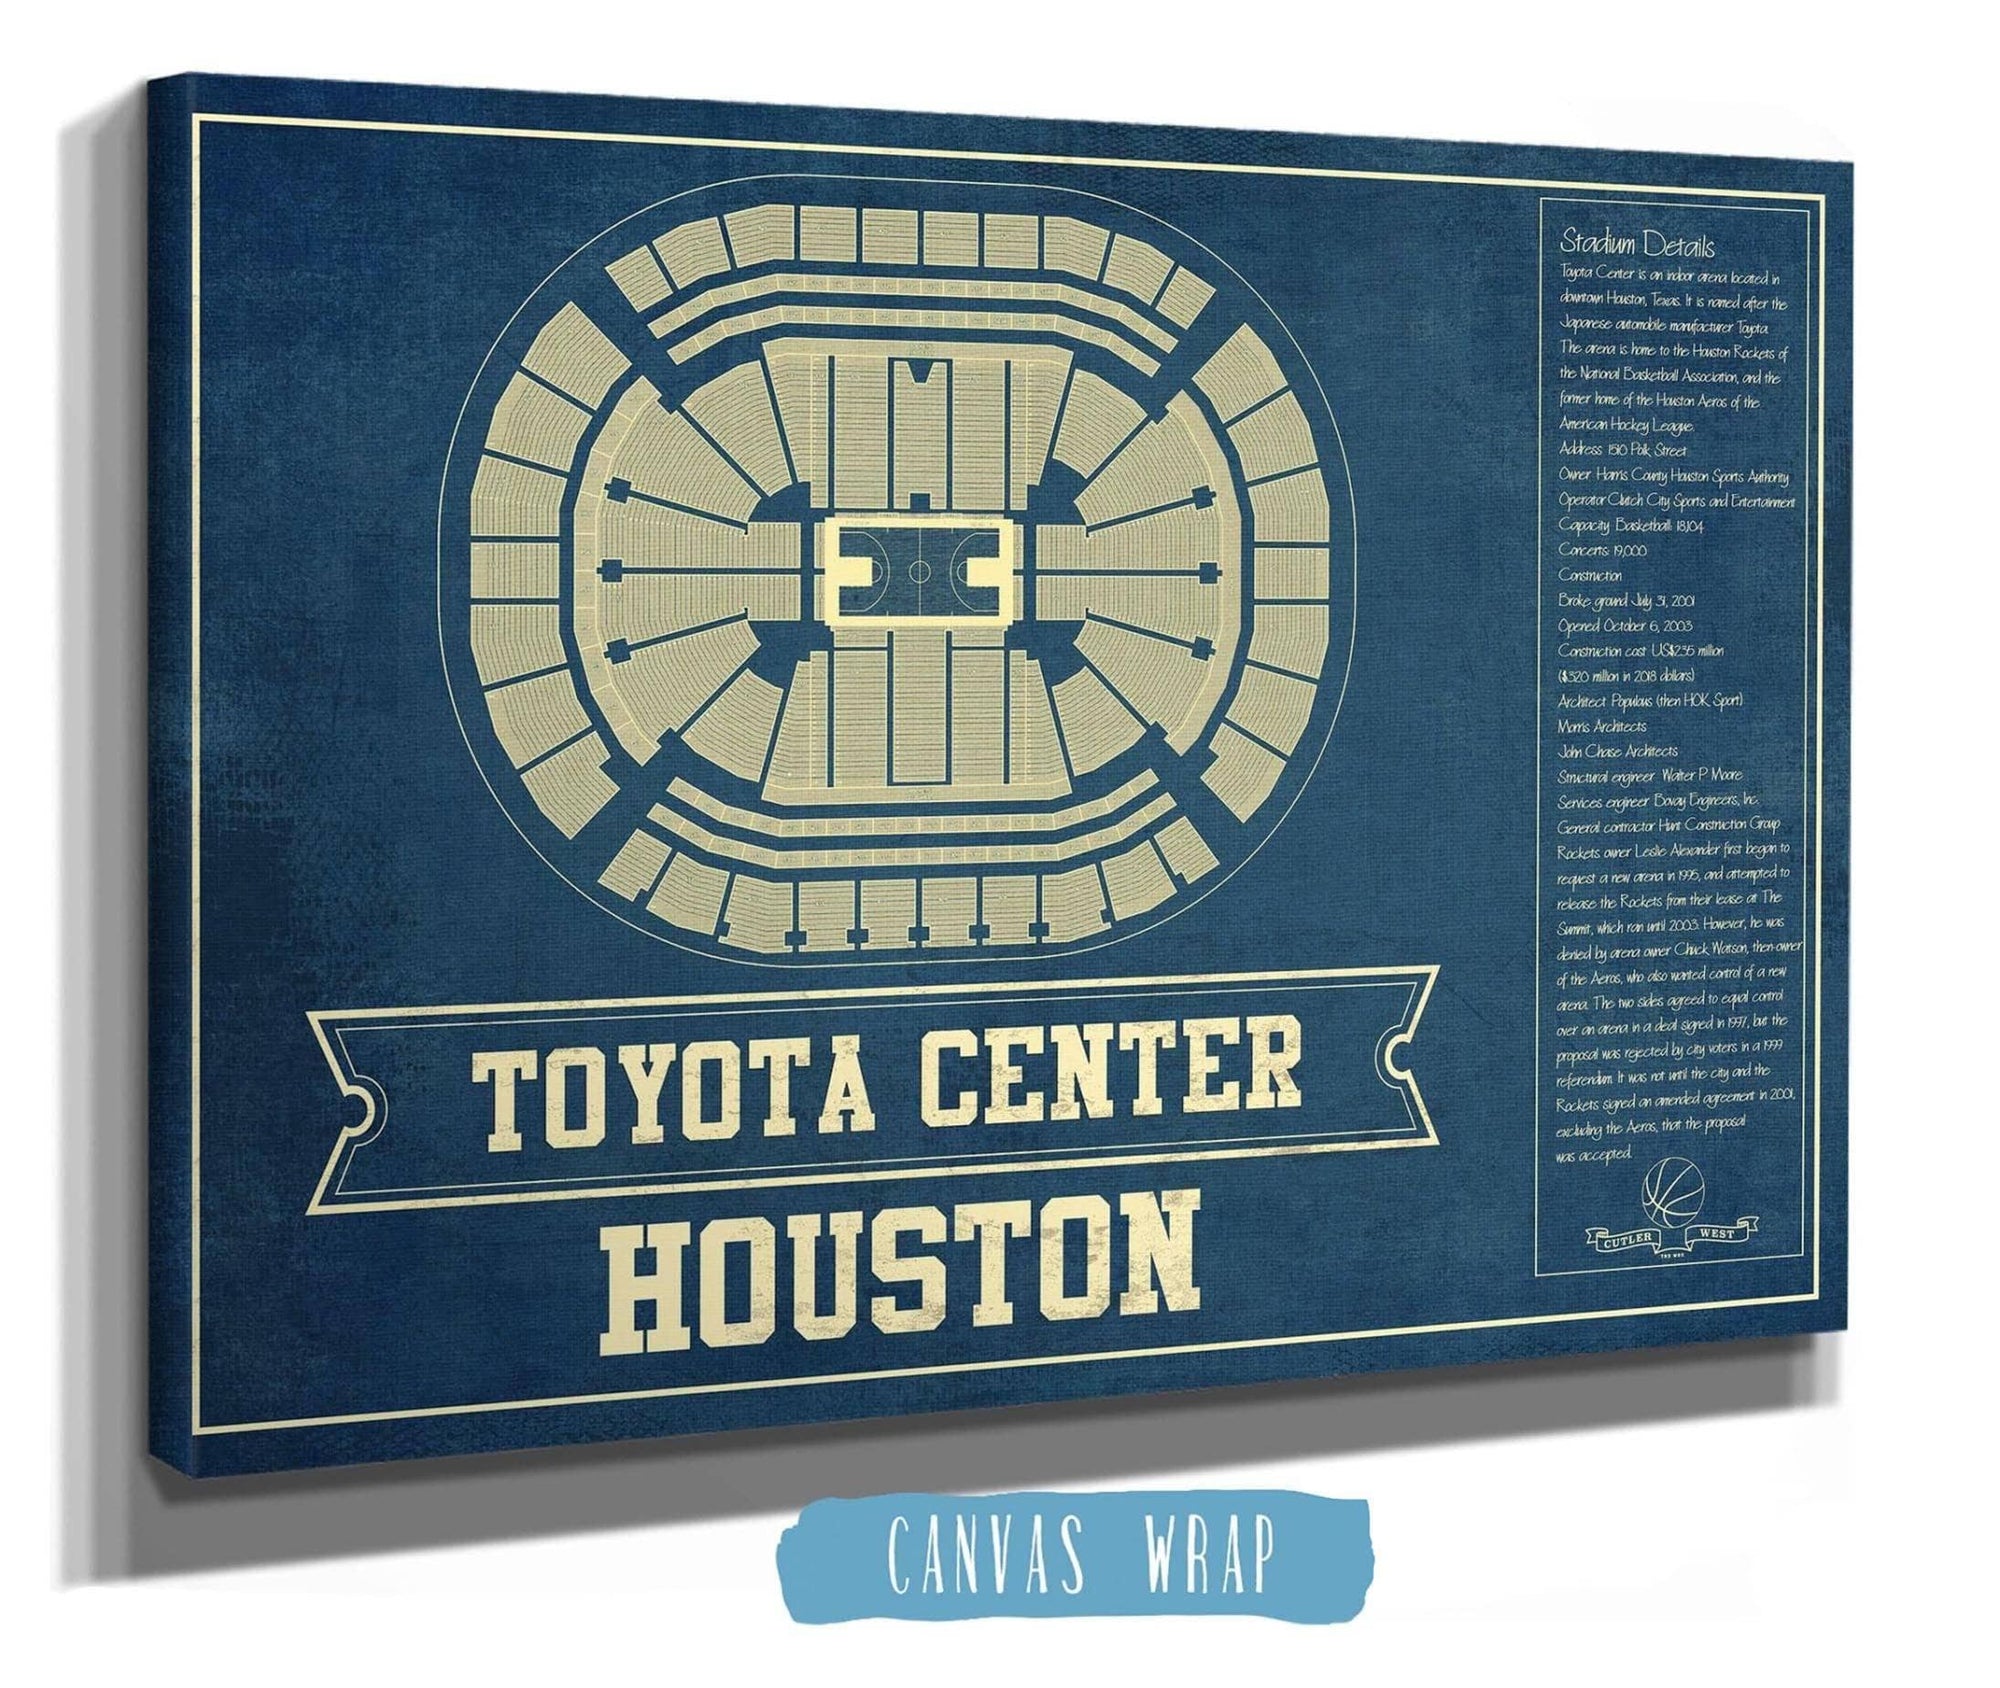 The Arena  Houston Toyota Center